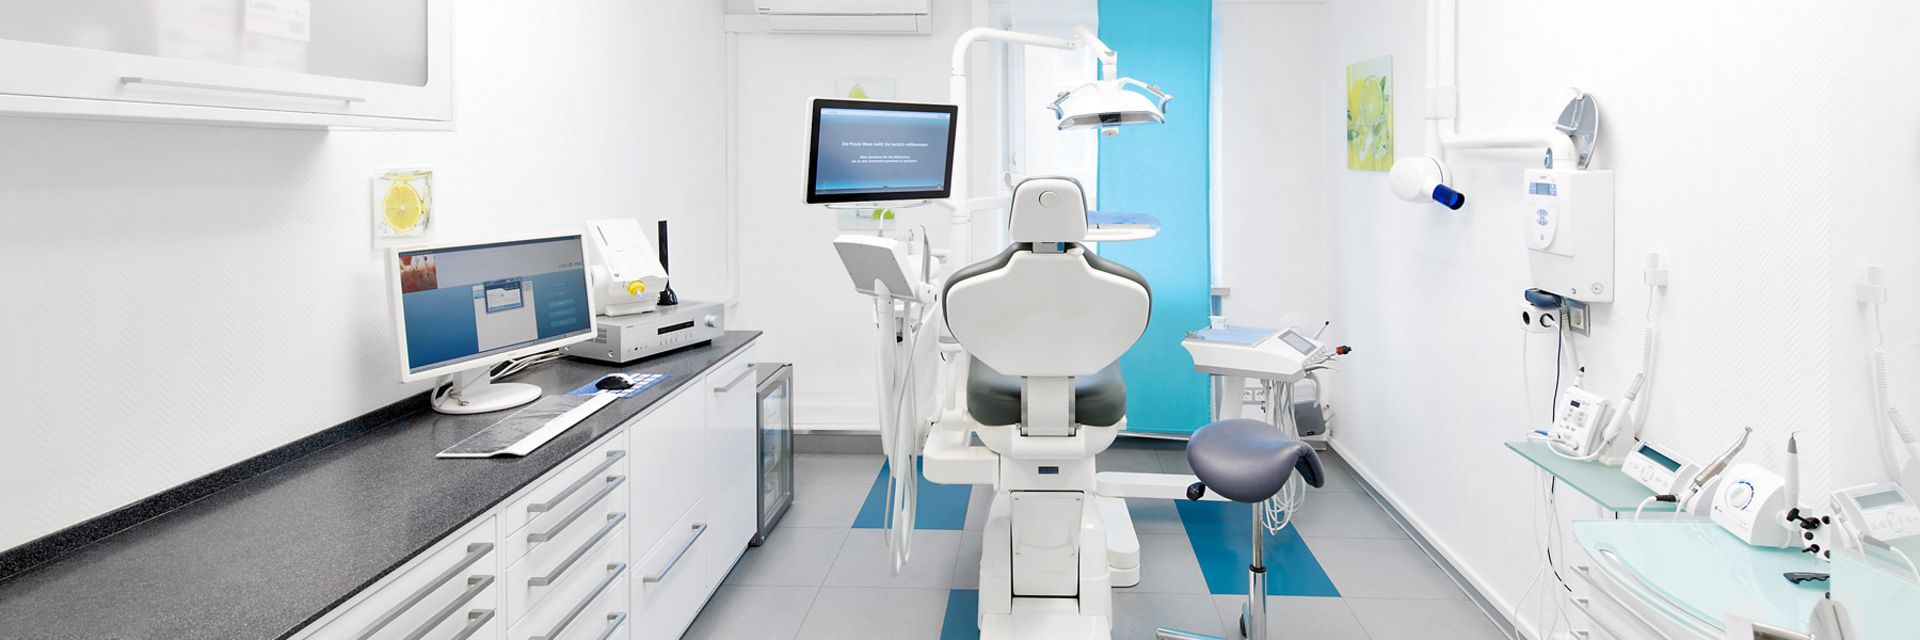 Zahnarzt moderne Ausstattung